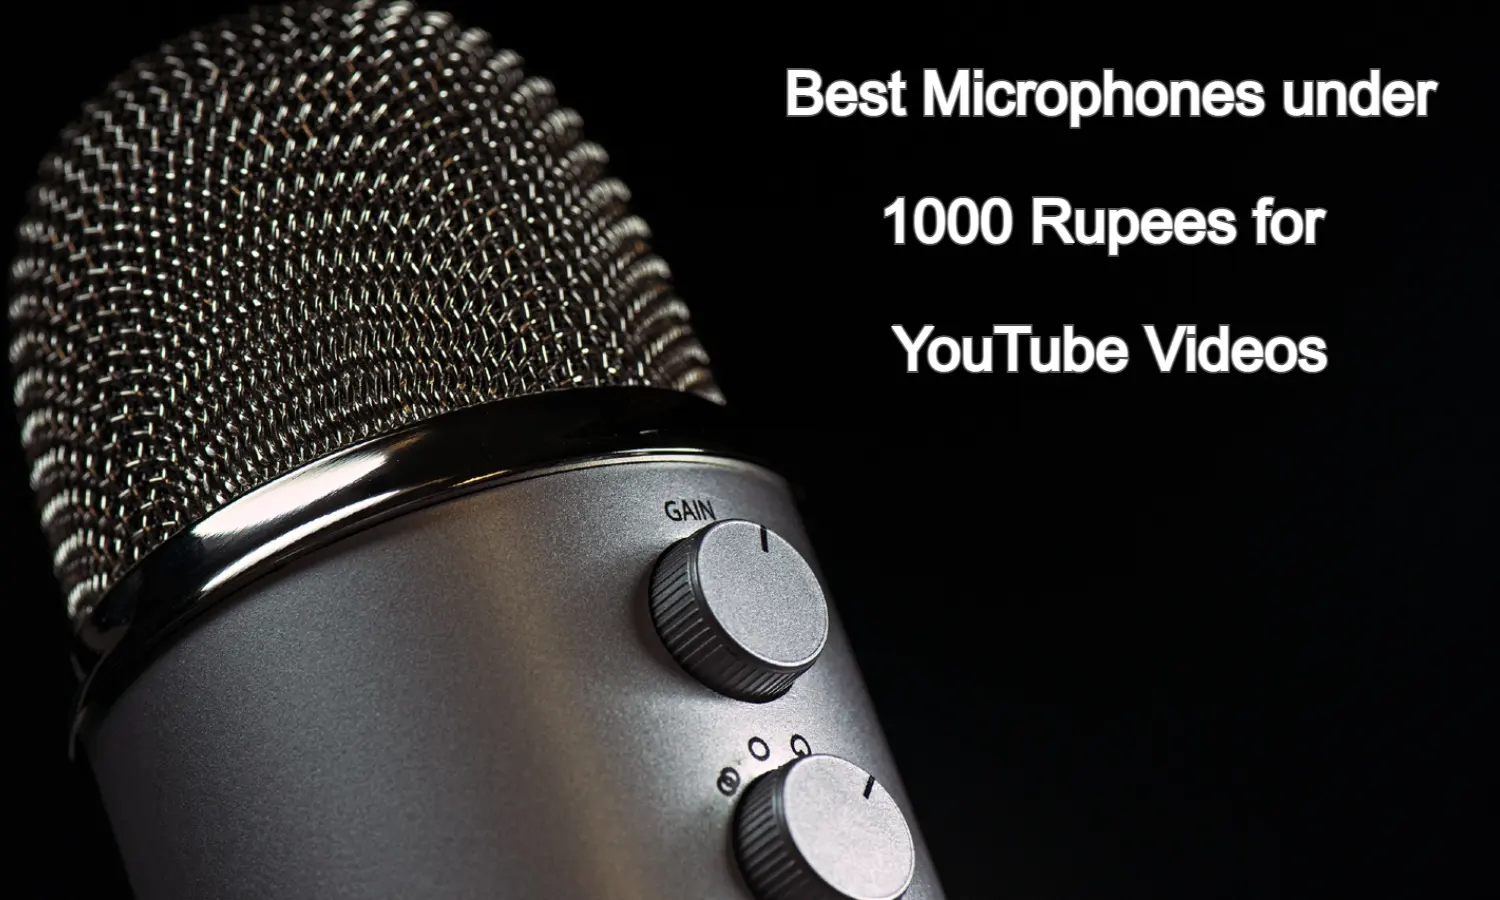 Best Microphones under 1000 Rupees